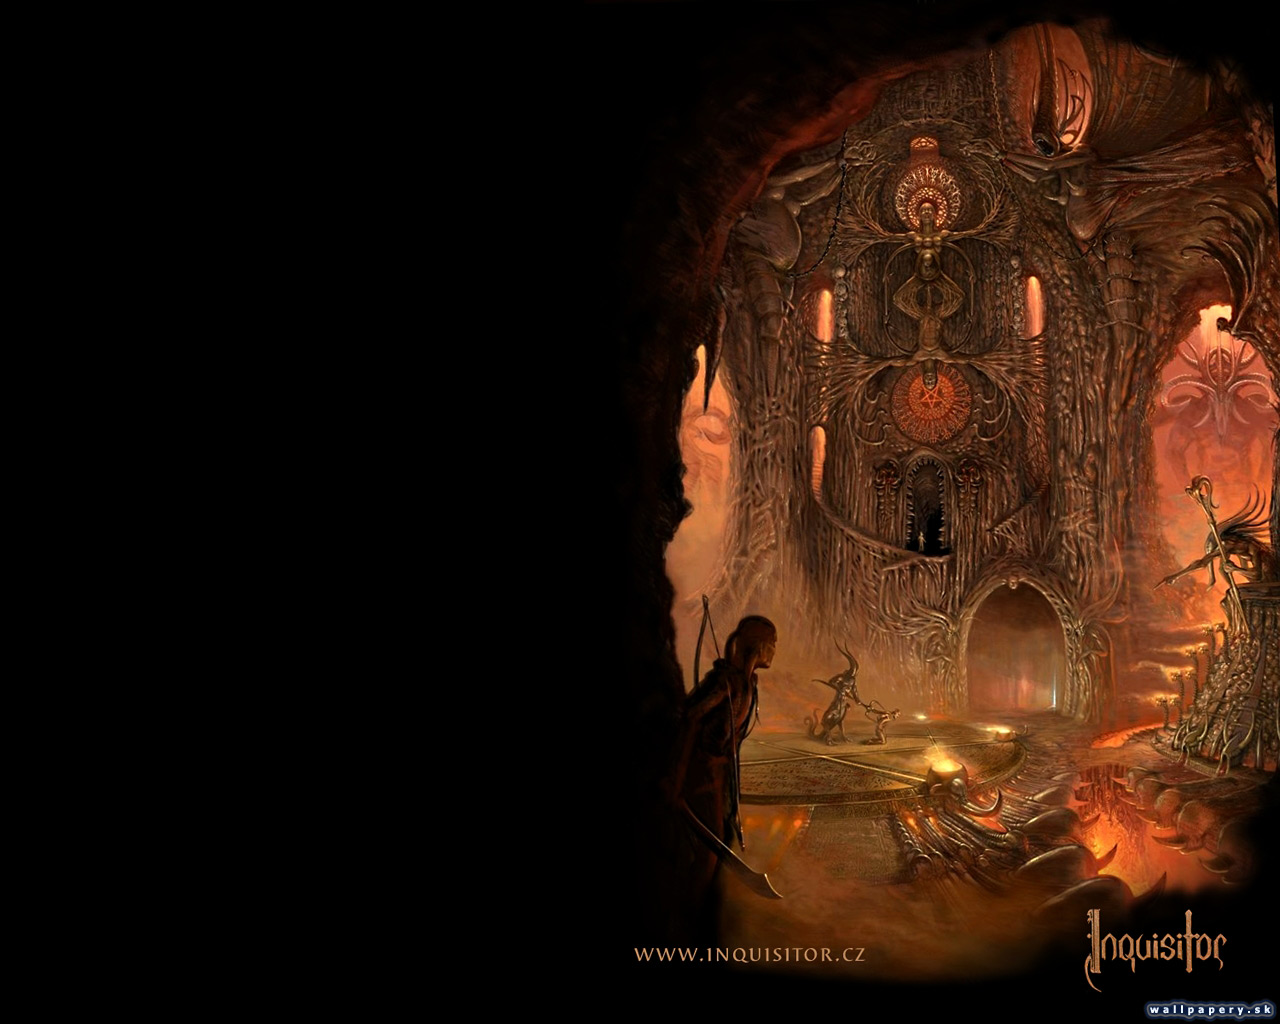 Inquisitor - wallpaper 4